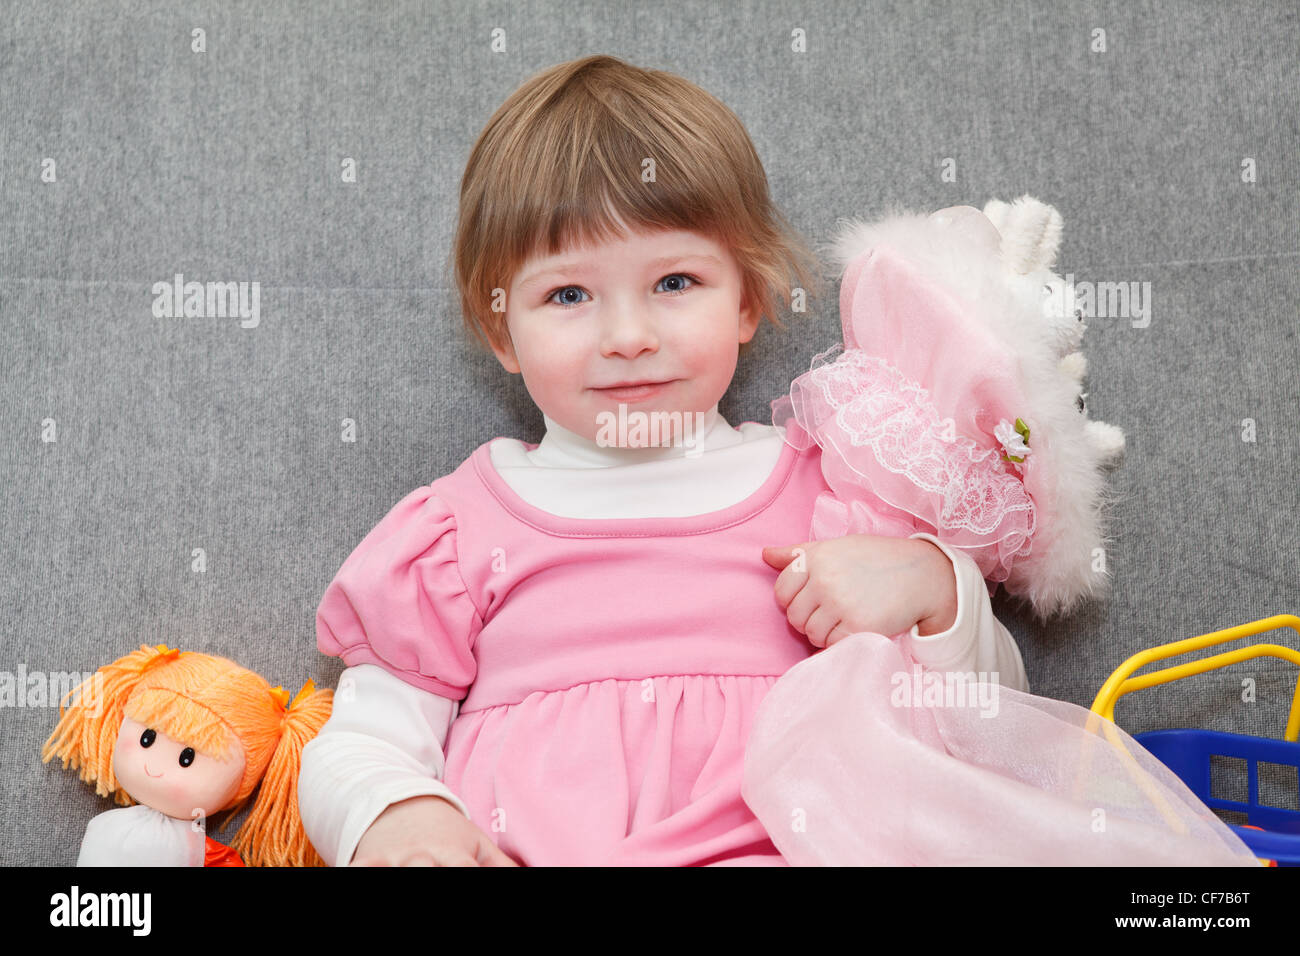 Porträt des kleinen kaukasischen russische Mädchen im rosa Kleid sitzt auf der Couch mit Puppen und lächelnd Stockfoto